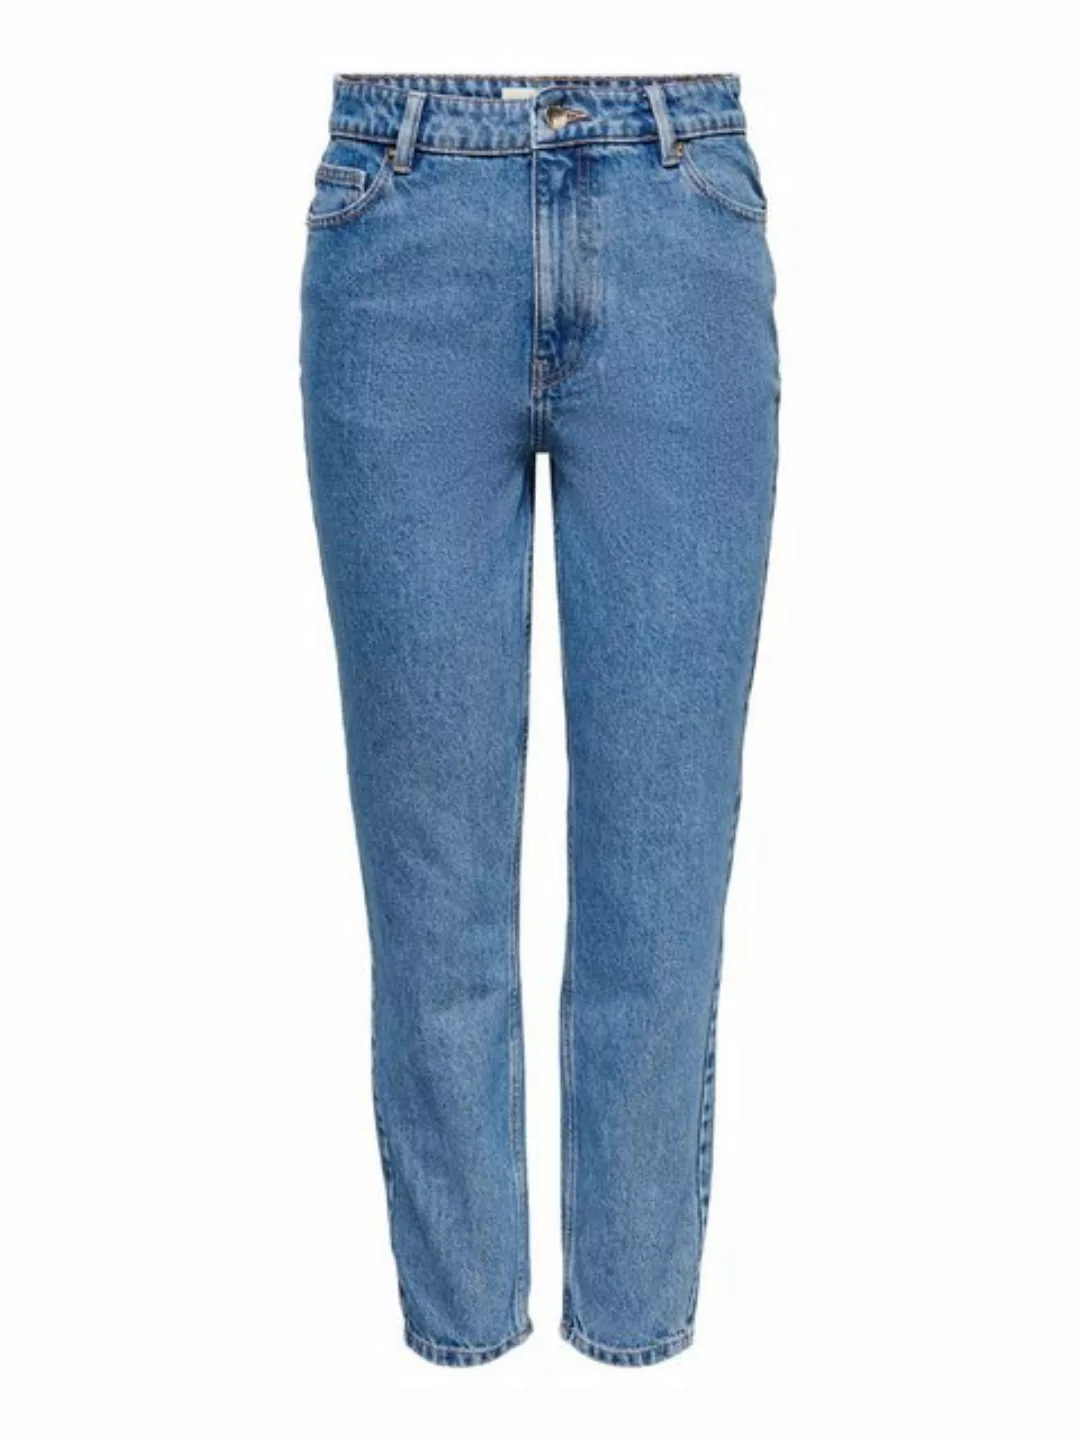 Only Damen Jeans 15242370 günstig online kaufen